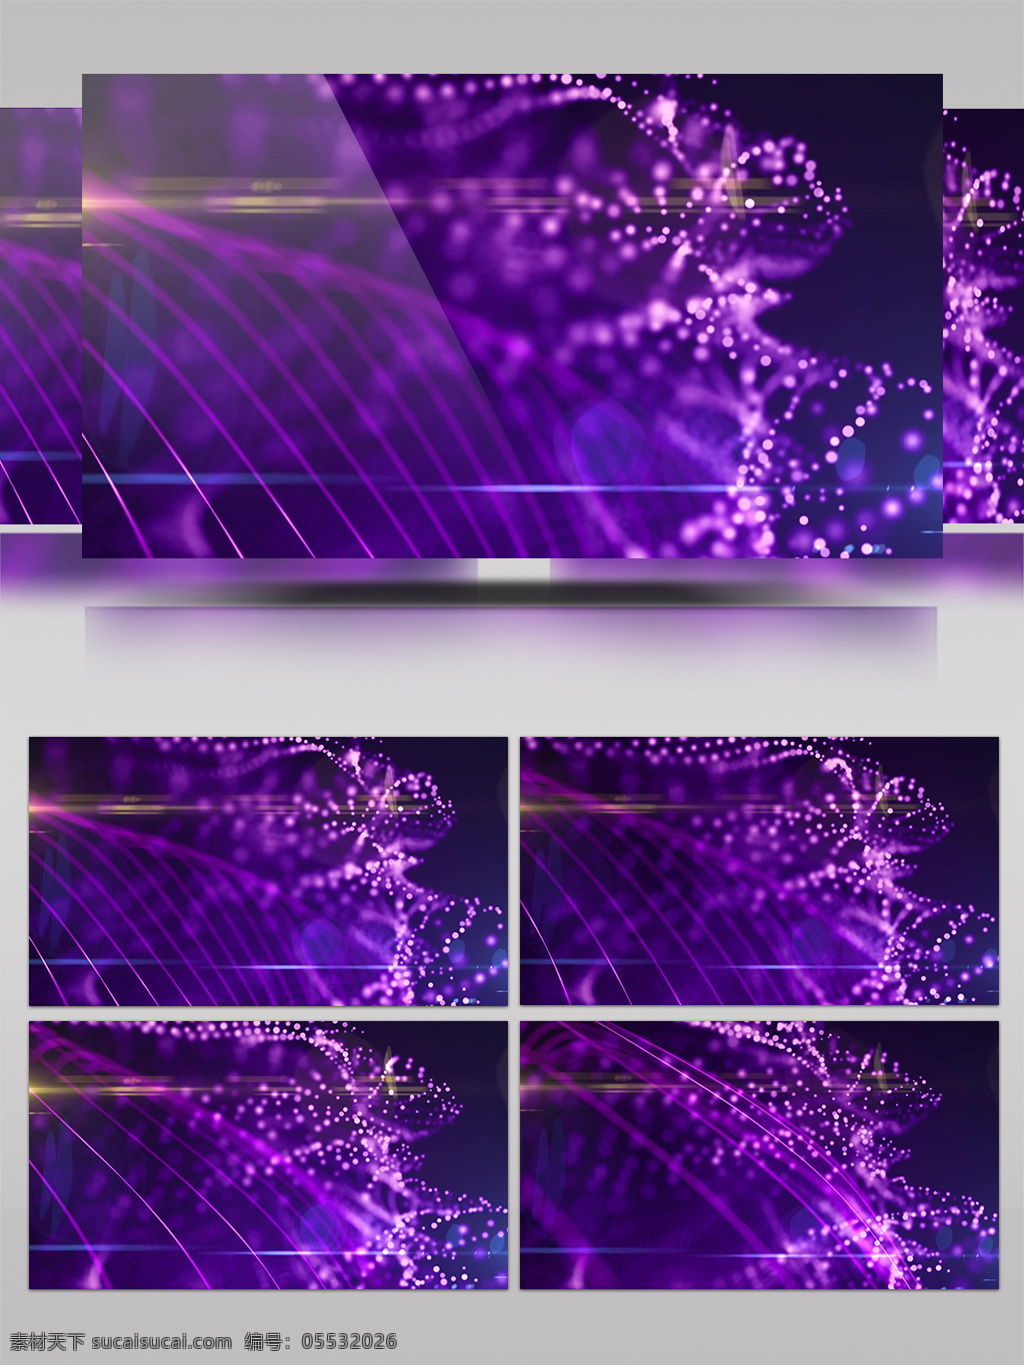 紫色 曲线 视频 炫酷紫色灯光 紫色灯光 生活抽象 画面意境 动态抽象 高清视频素材 特效视频素材